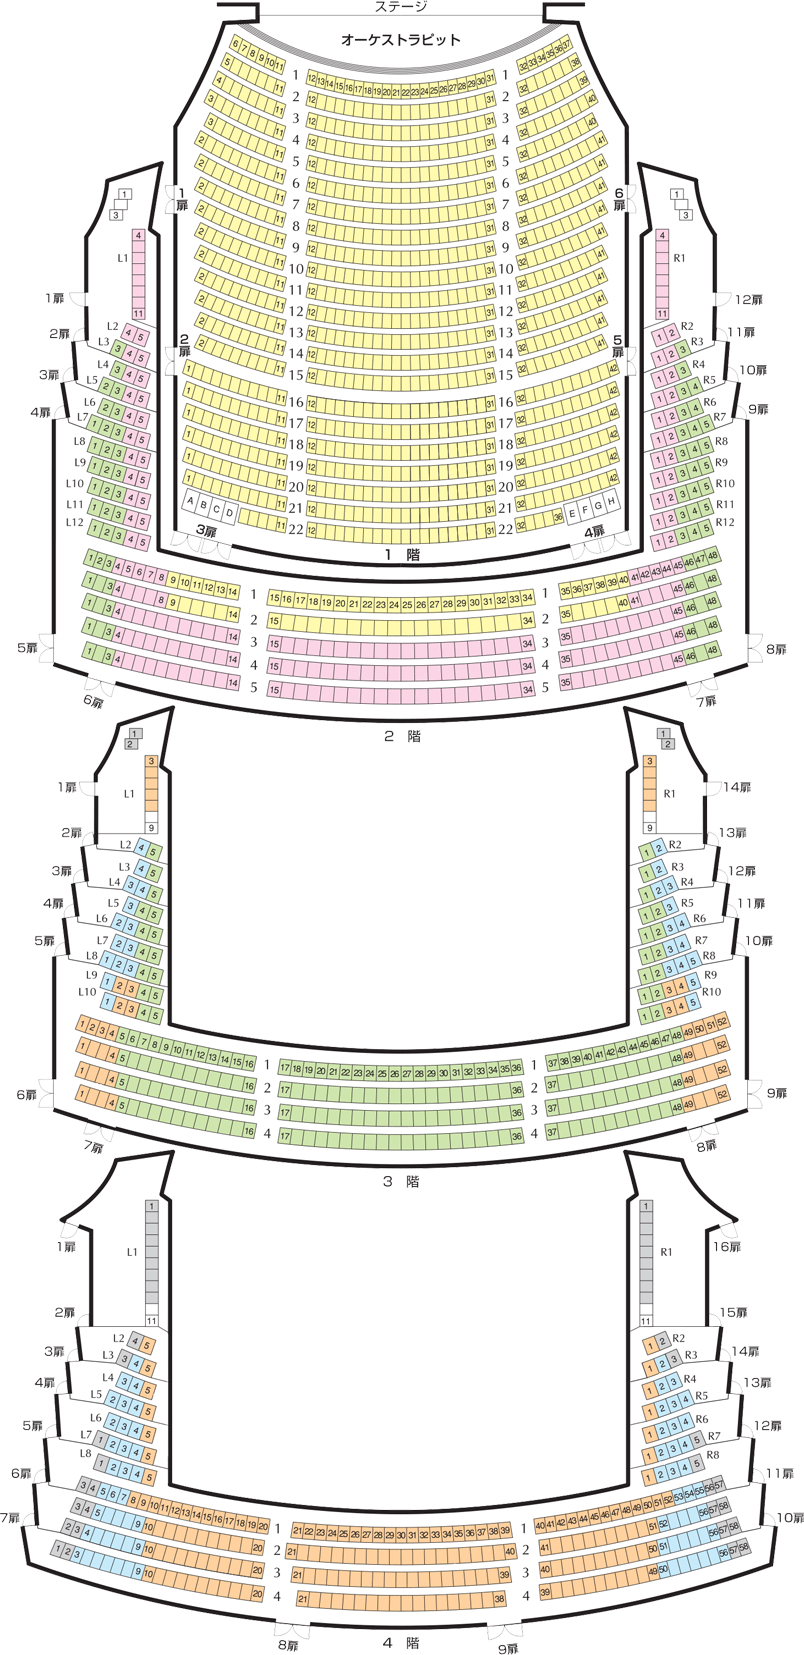 図：オペラパレス座席表